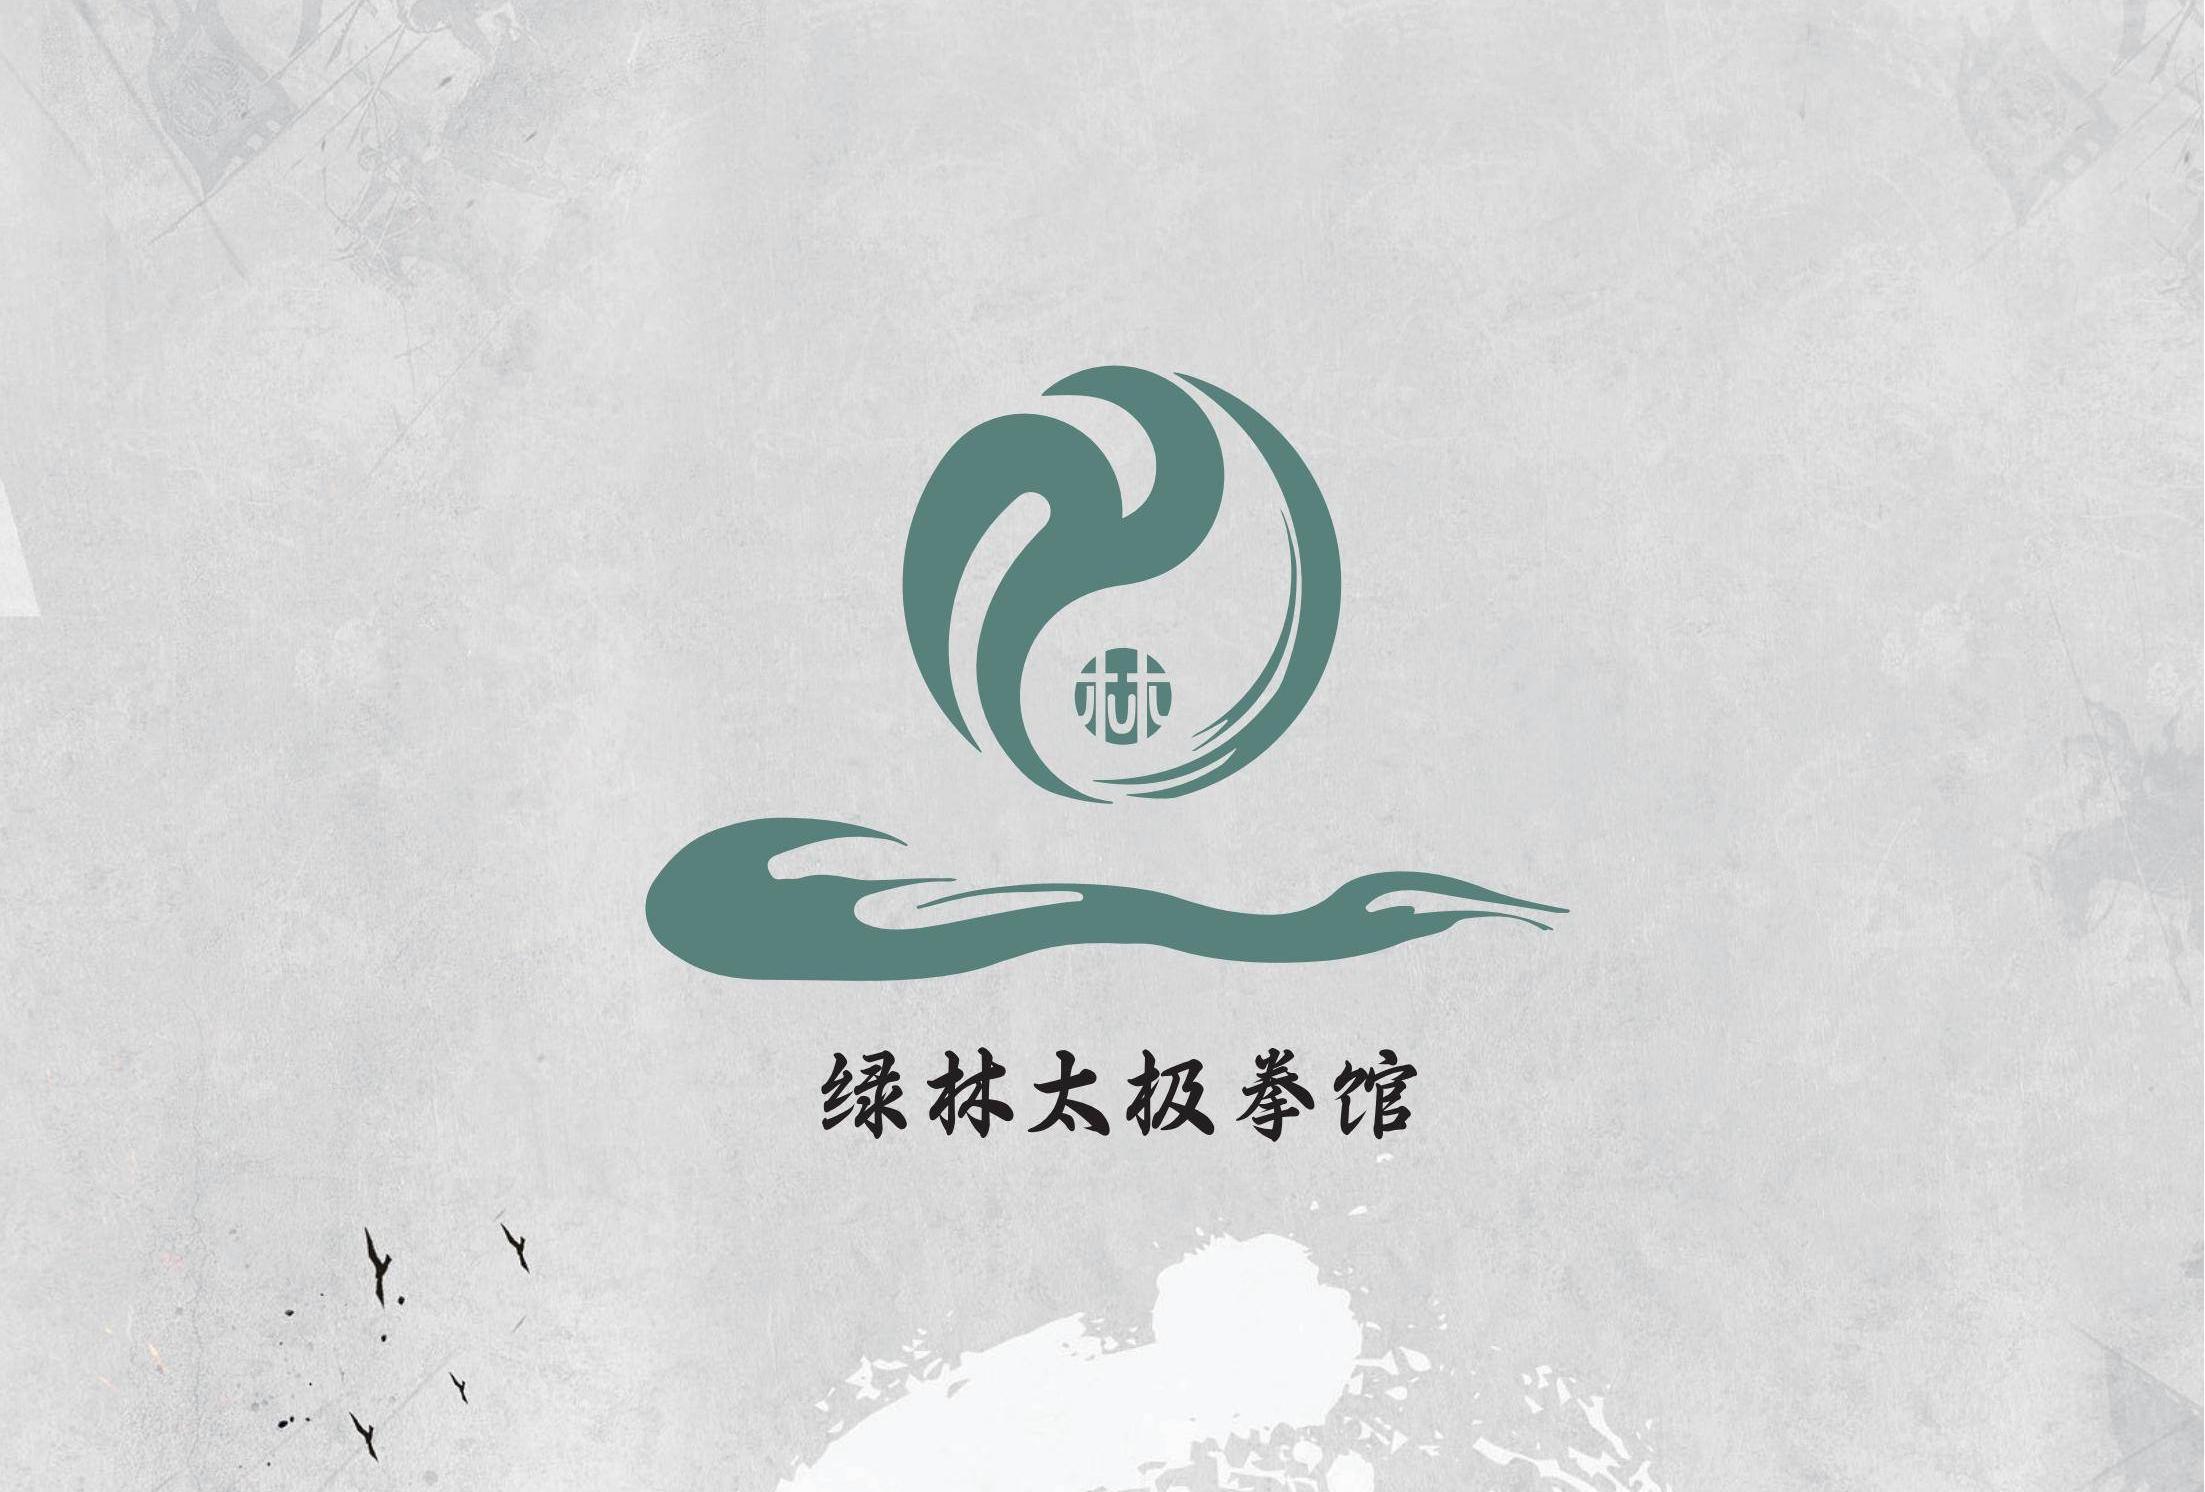 绿林太极拳馆logo